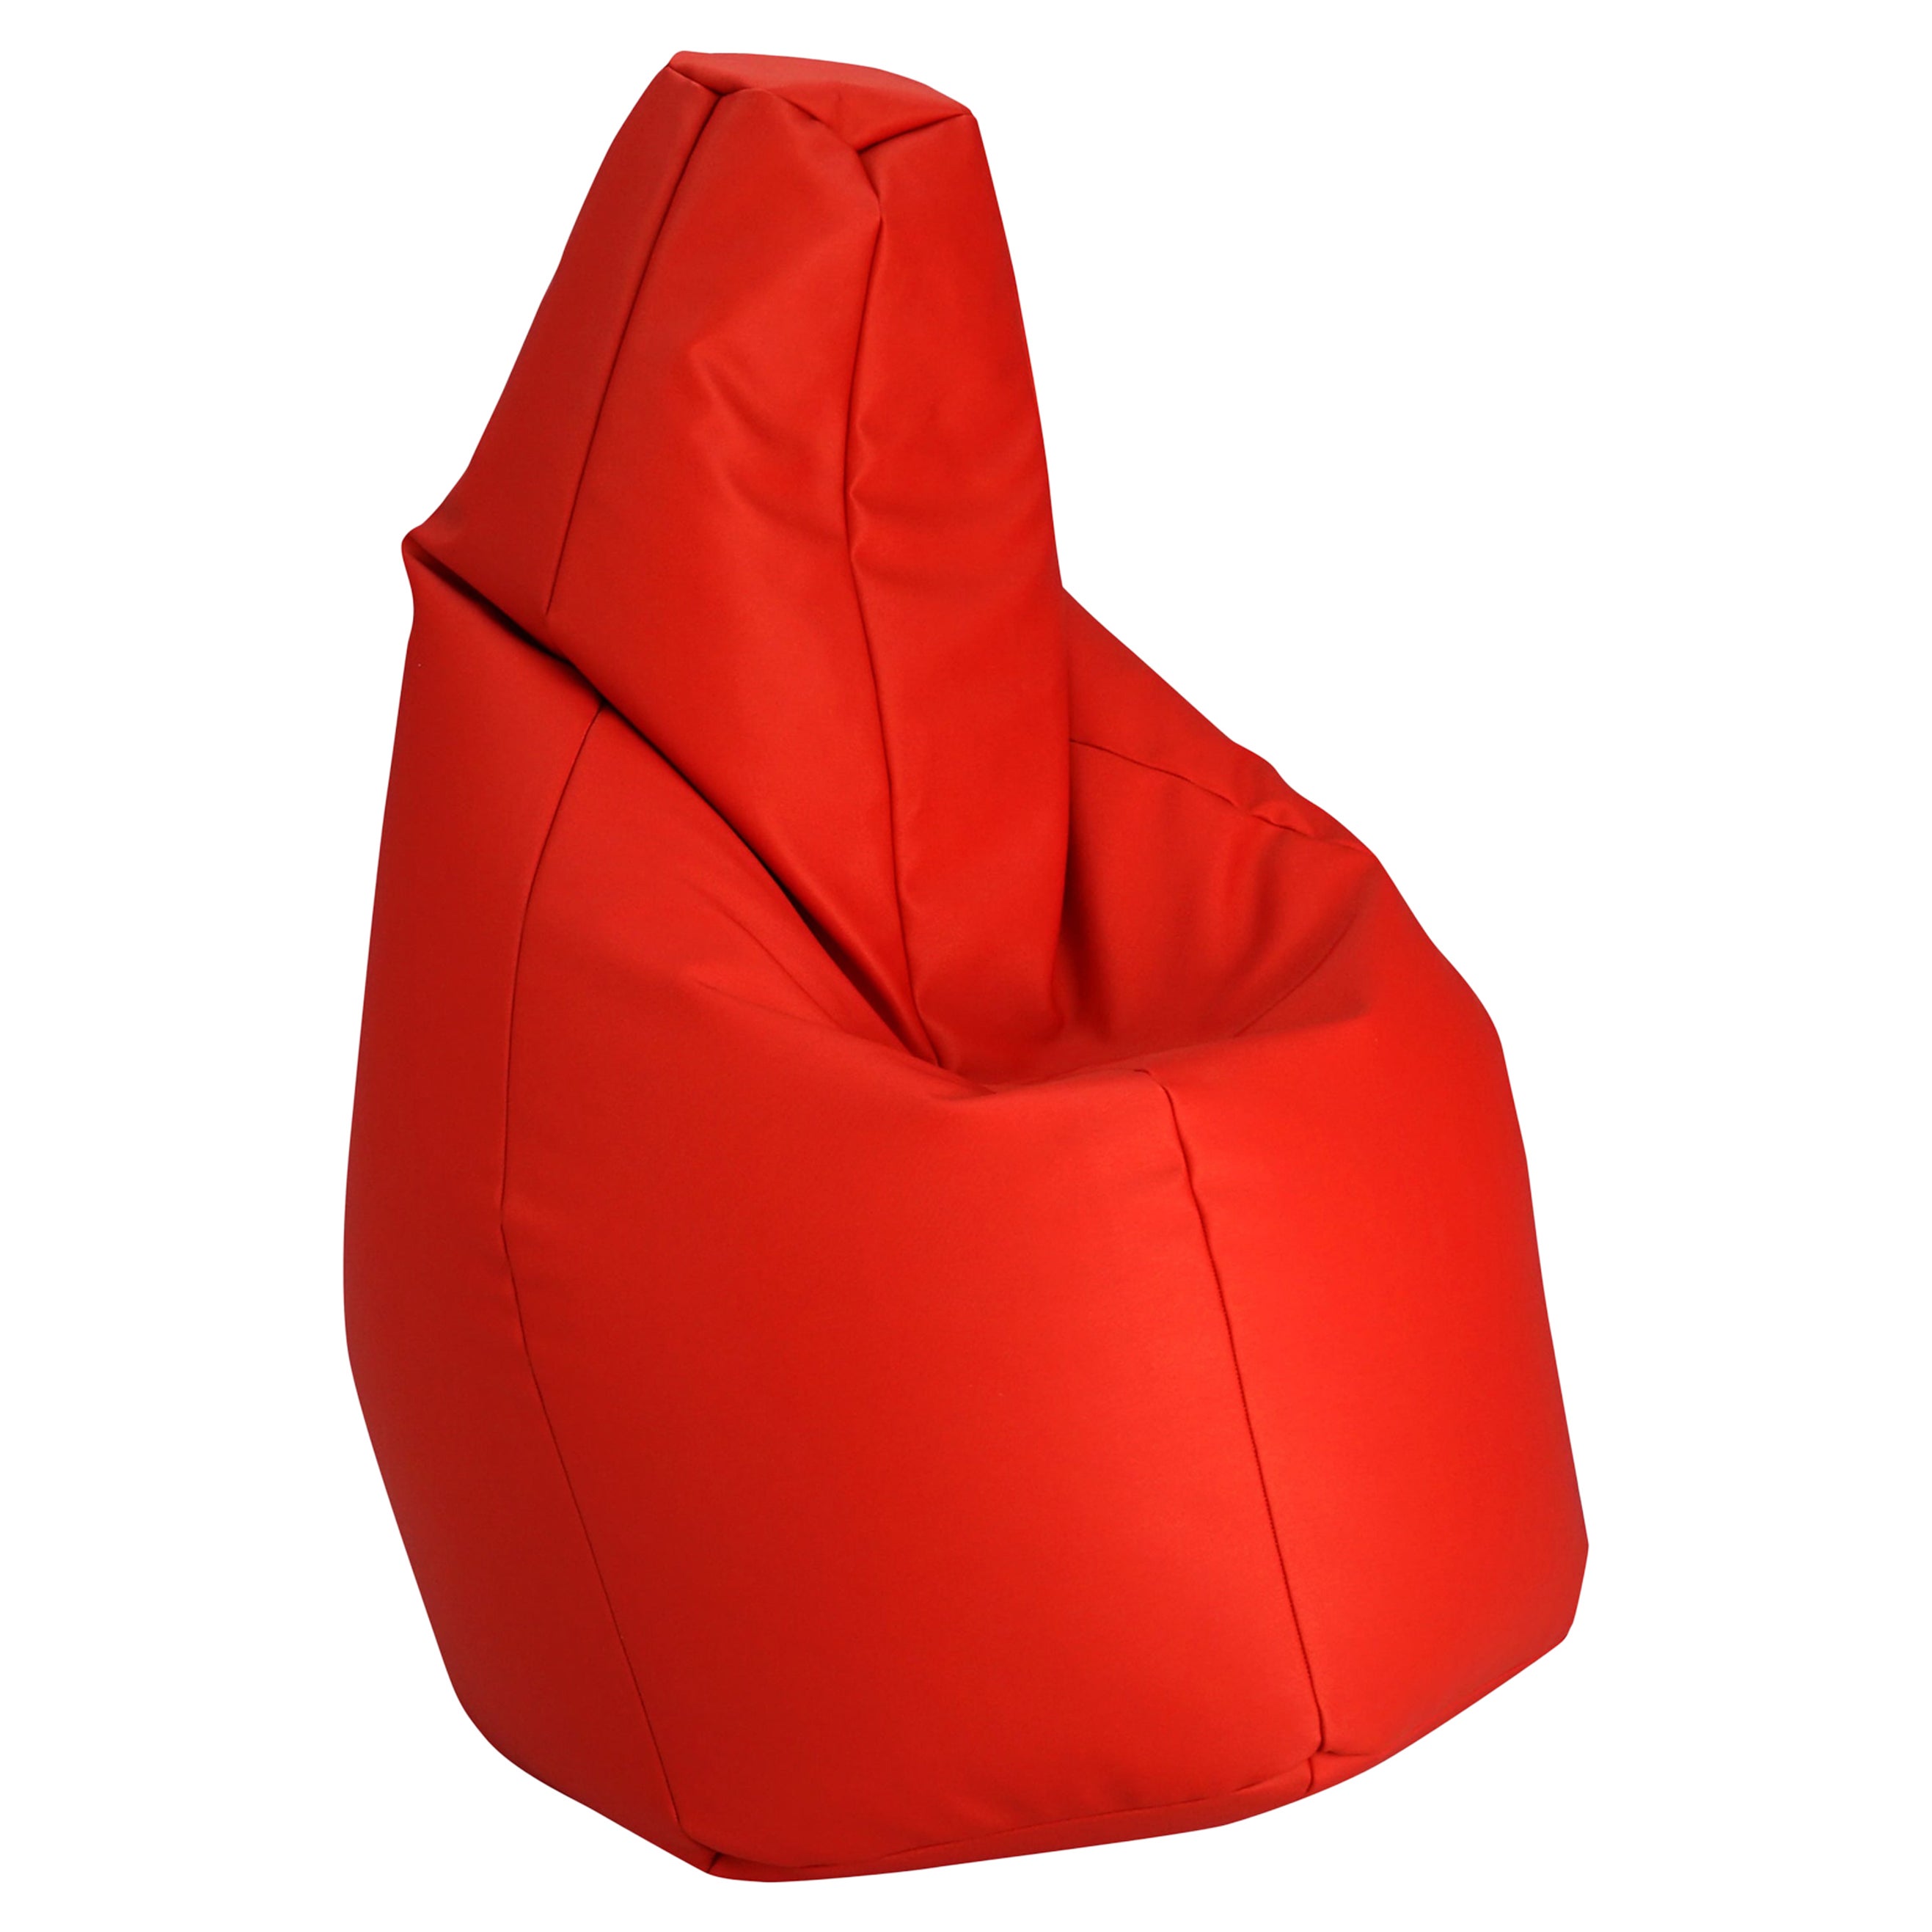 Zanotta Large Sacco in Red Vip Fabric by Gatti, Paolini, Teodoro For Sale